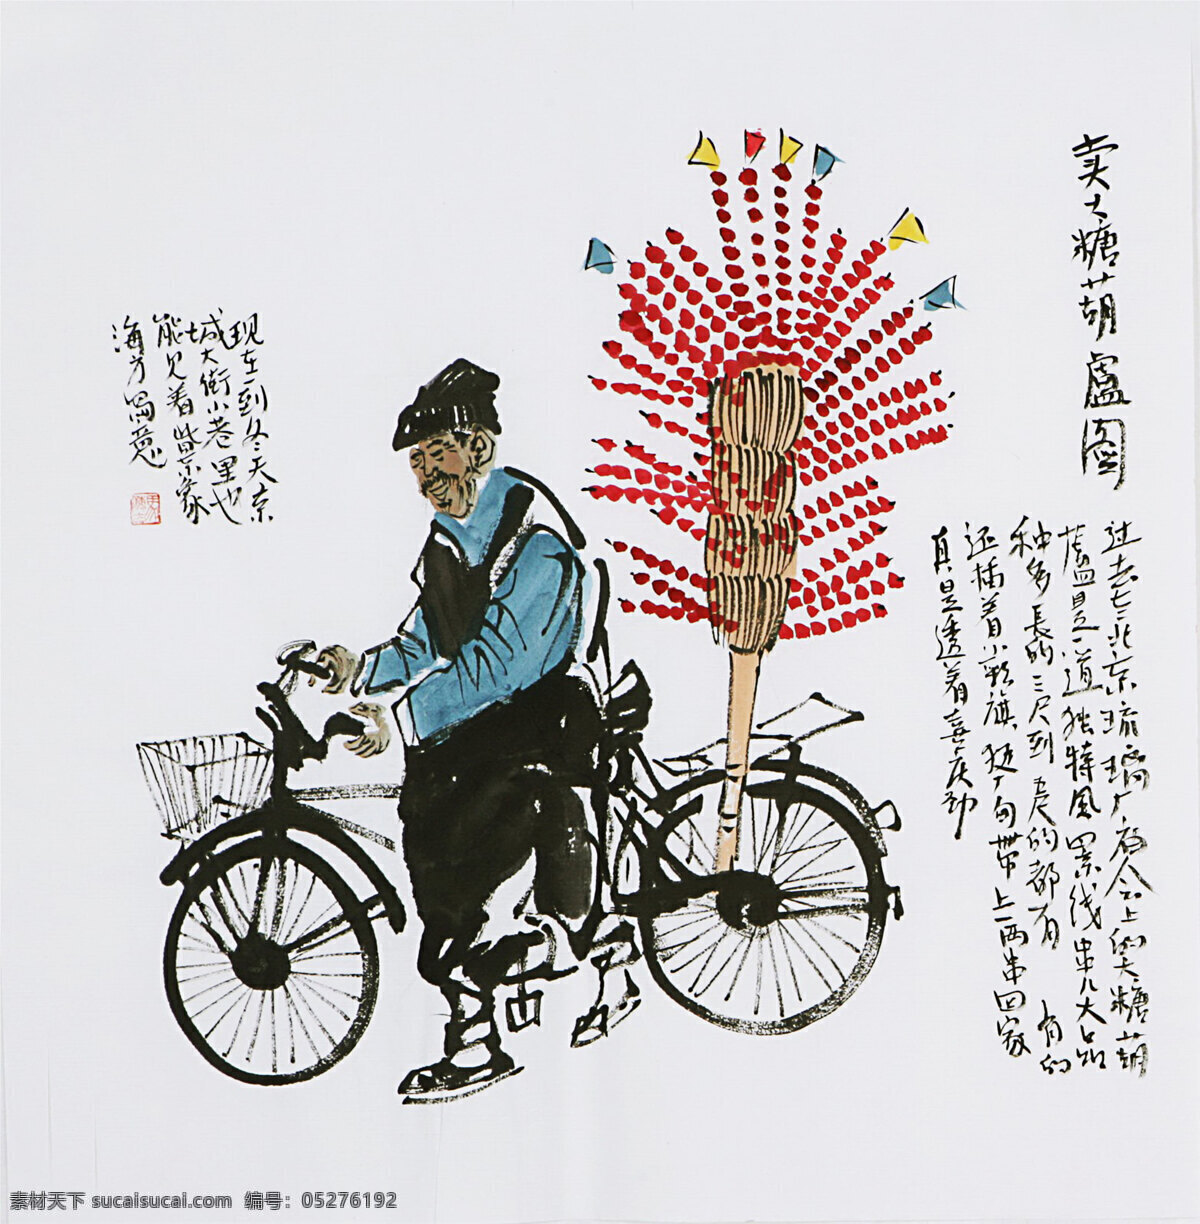 国画 民国画 自行车 老人 卖糖葫芦 人物 文化艺术 绘画书法